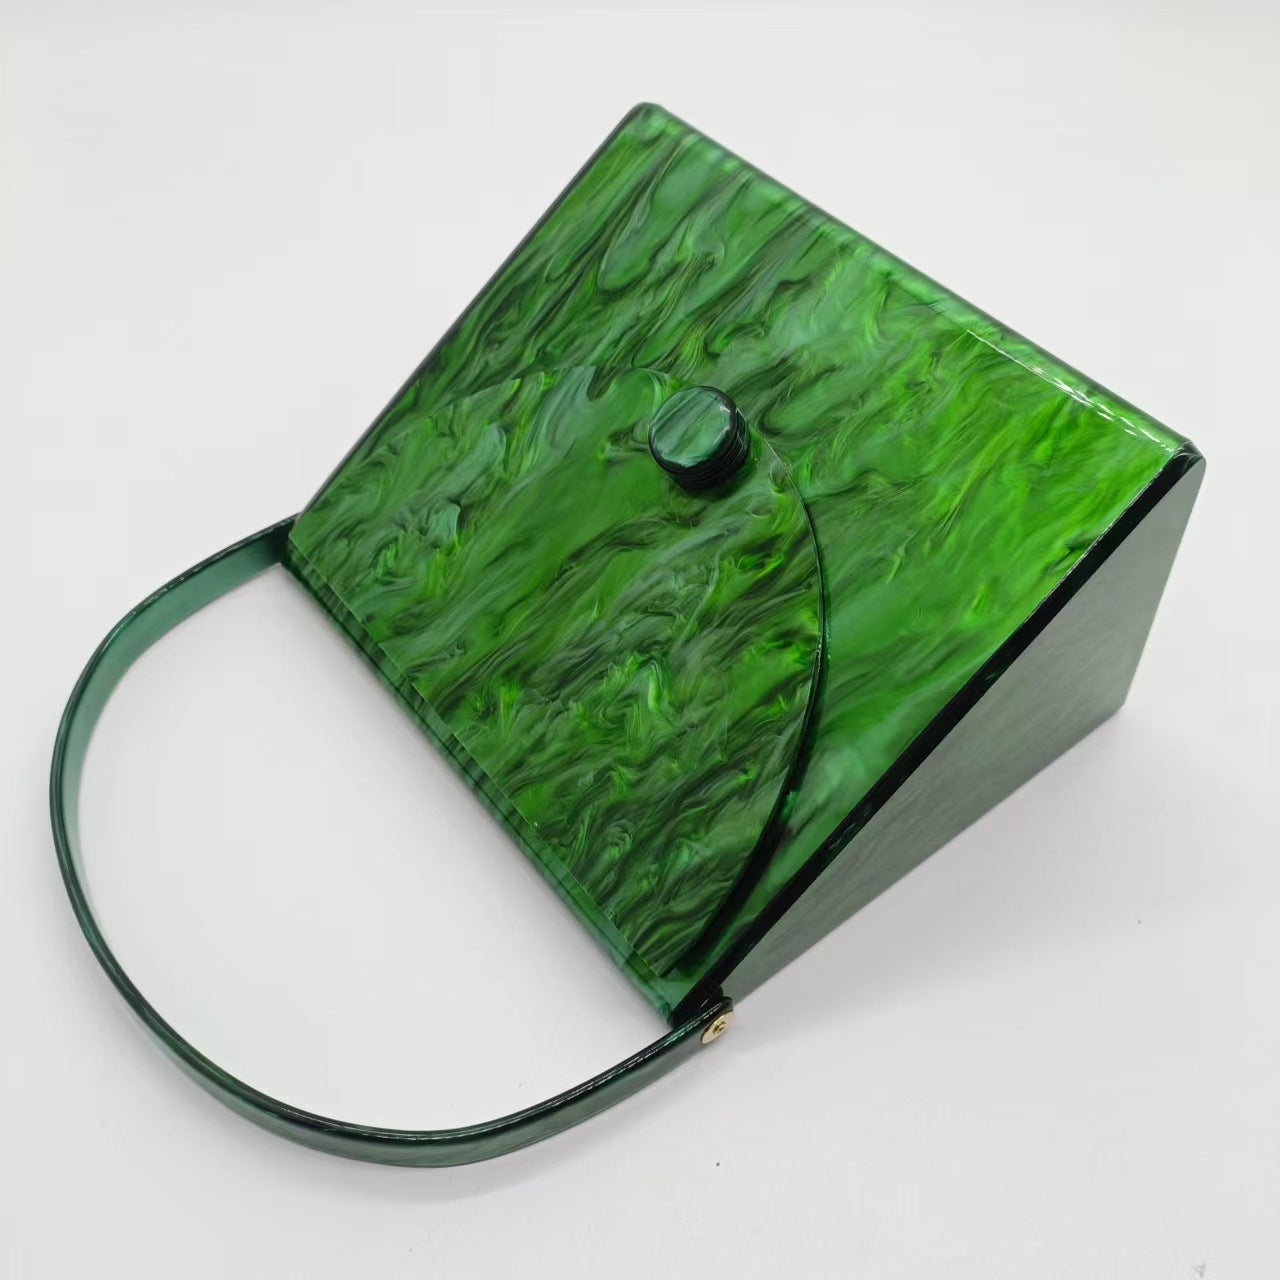 Marbled Acrylic Handbag